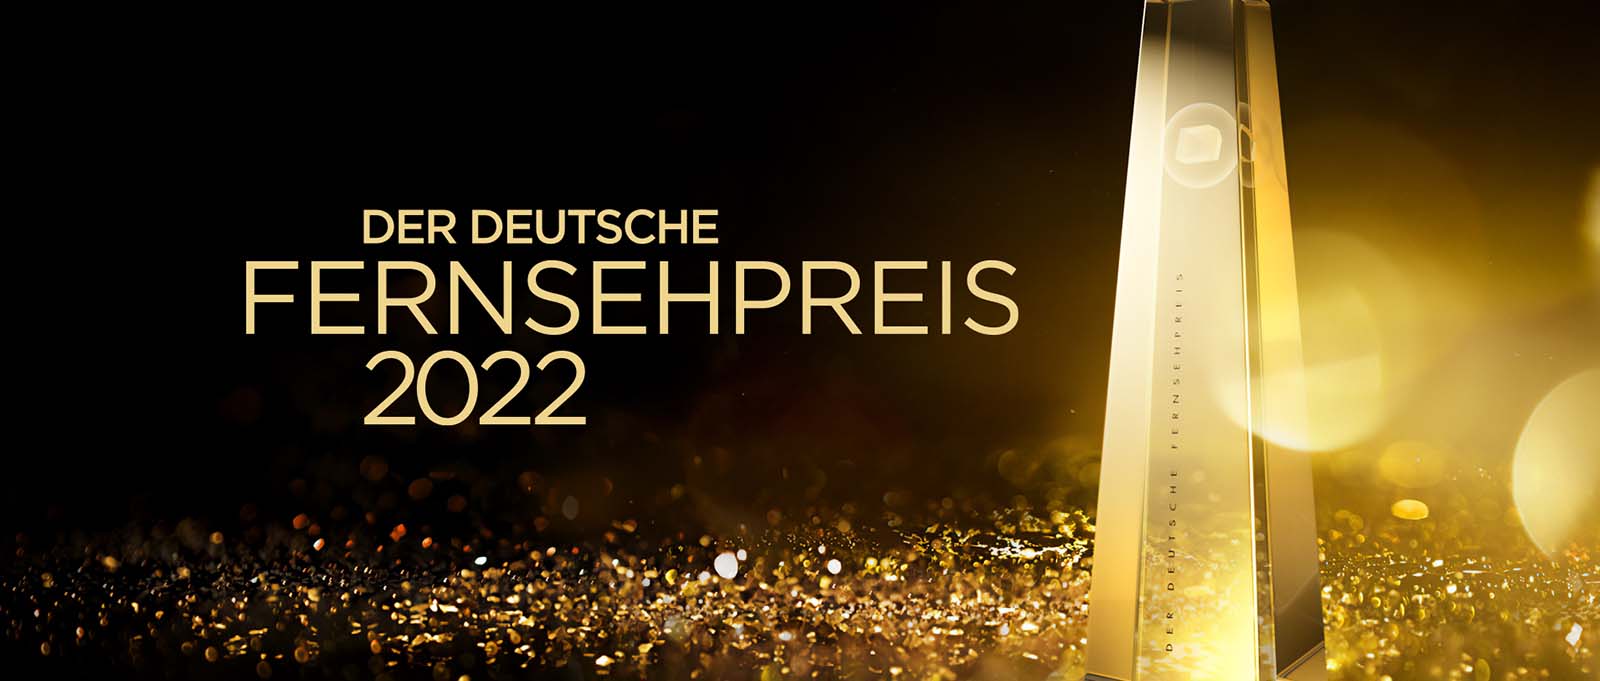 Deutscher Fernsehpreis 2022 in der Kategorie "Beste Ausstattung Unterhaltung" (Bambi Mercury & Envy Peru stellvertretend für das gesamte Team) 